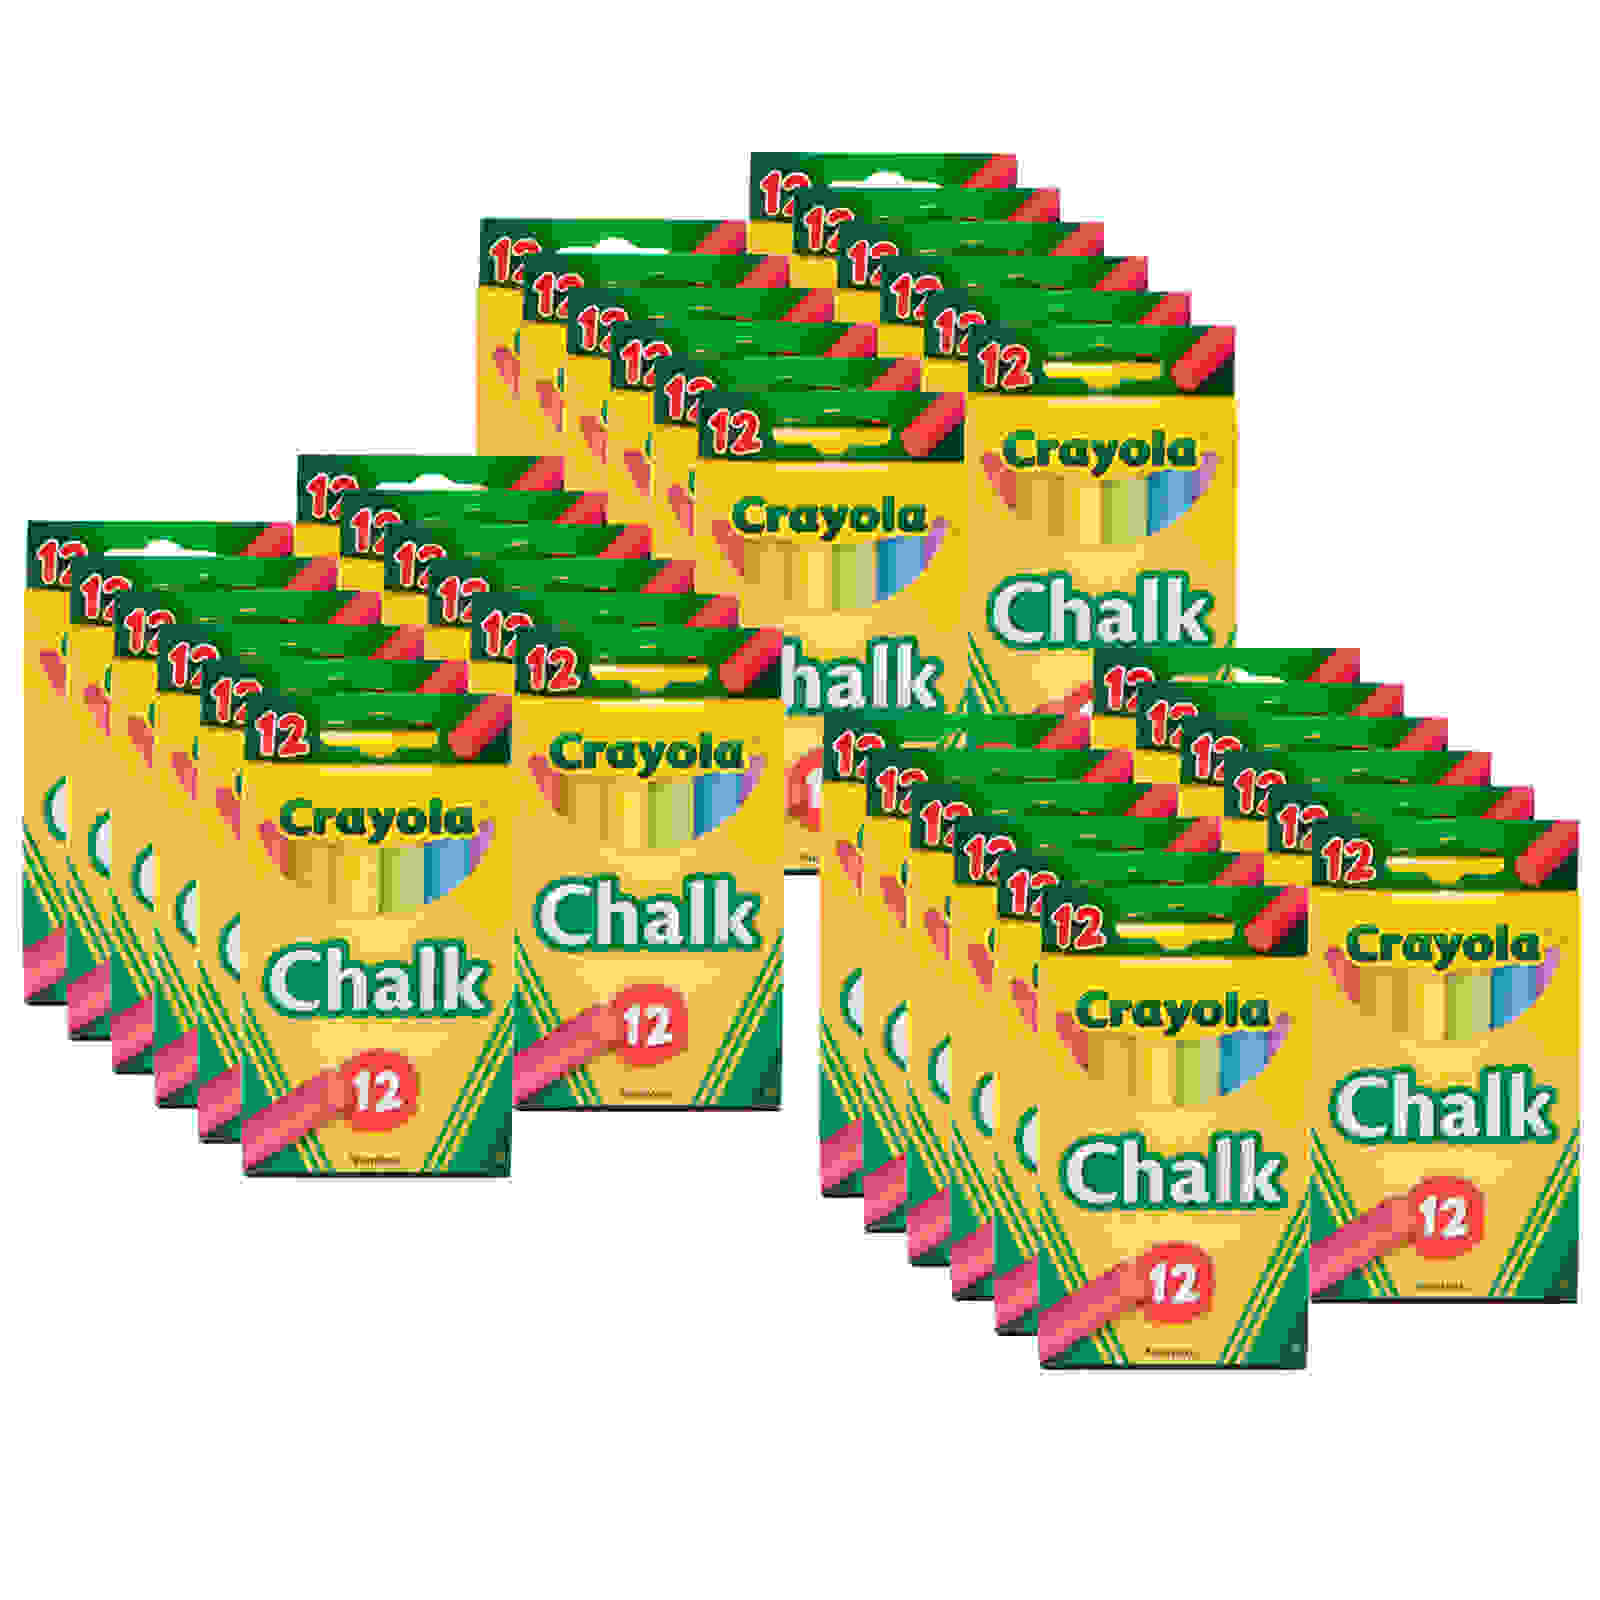 Multi-Colored Children's Chalk, 12 Per Box, 36 Boxes